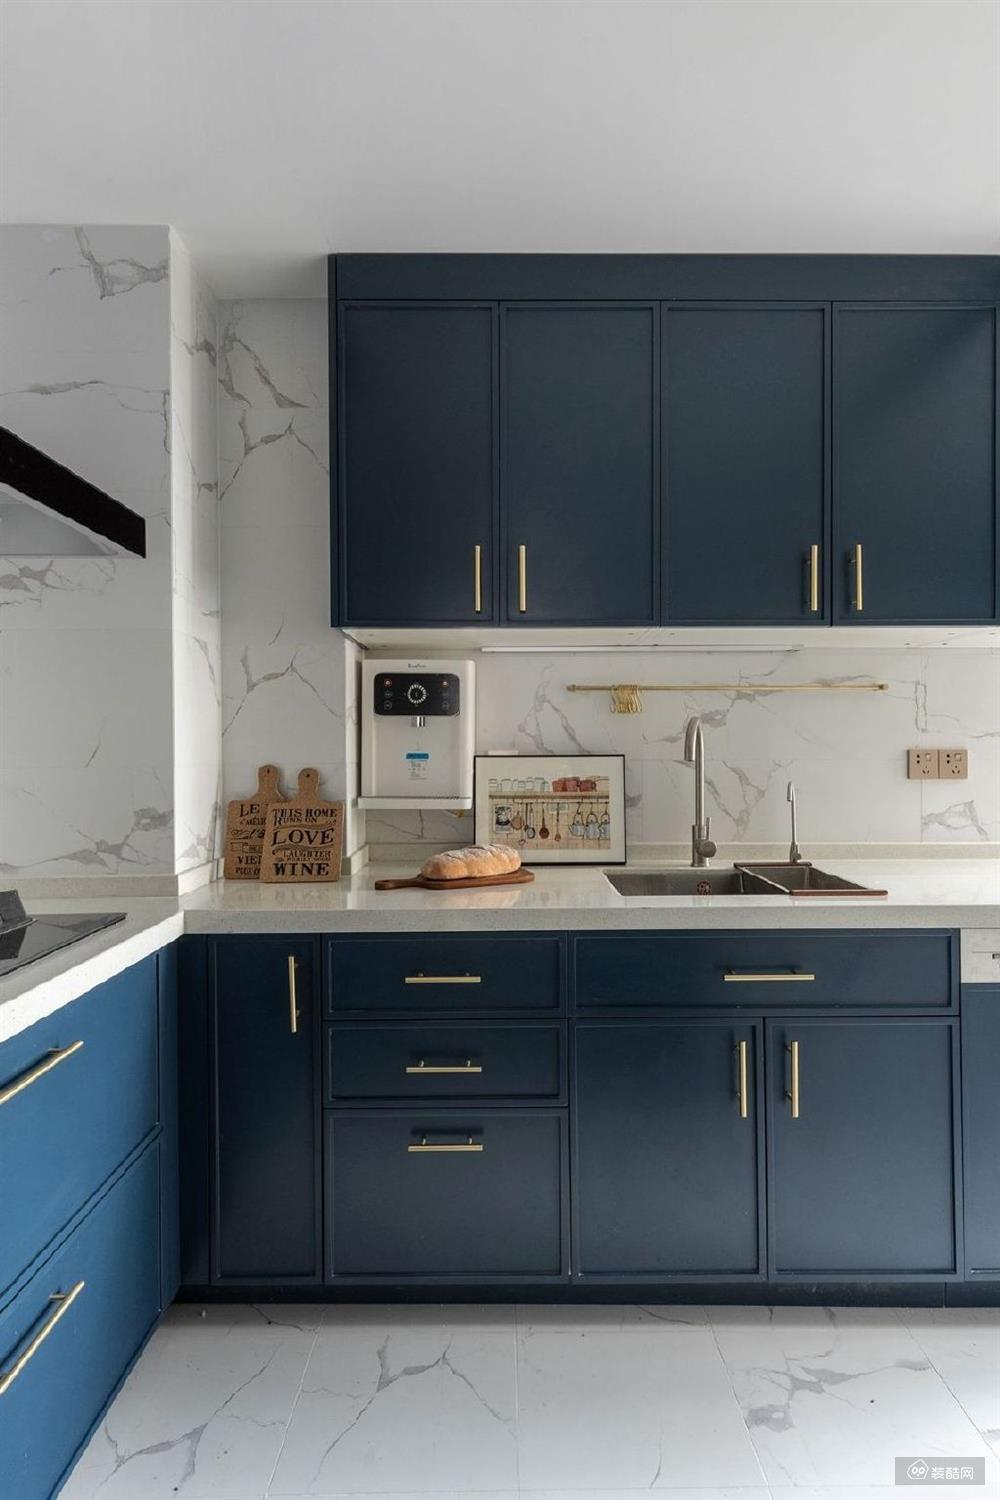 厨房则是做了蓝色的处理,整个橱柜做了满壁设计,把空间做到了最大化的